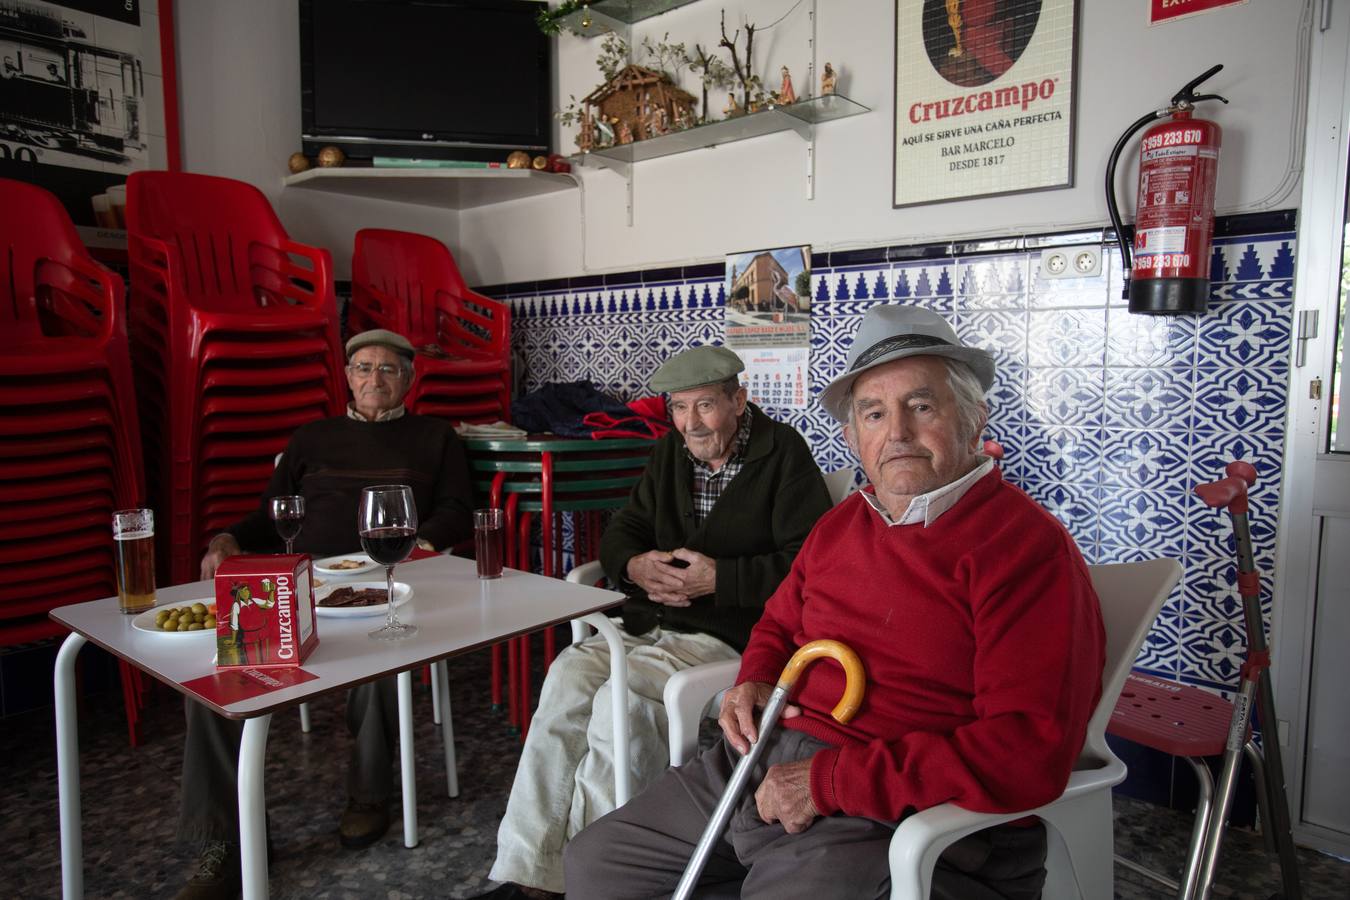 En imágenes, El Madroño: el municipio más despoblado de Sevilla